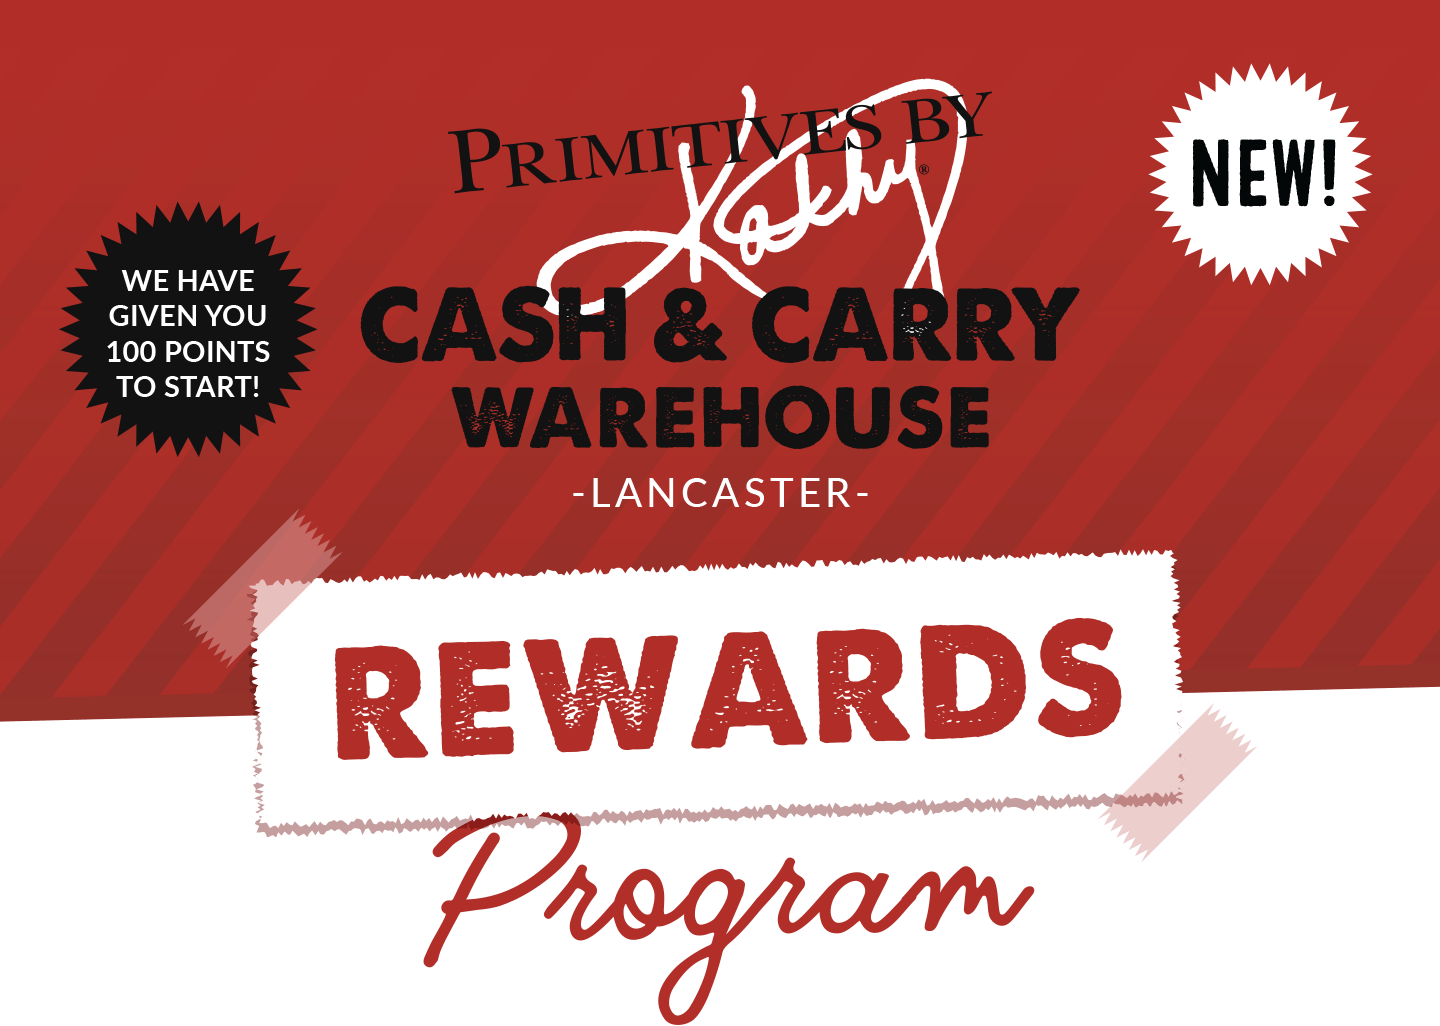 Cash & Carry Warehouse Lancaster  |  REWARDS PROGRAM